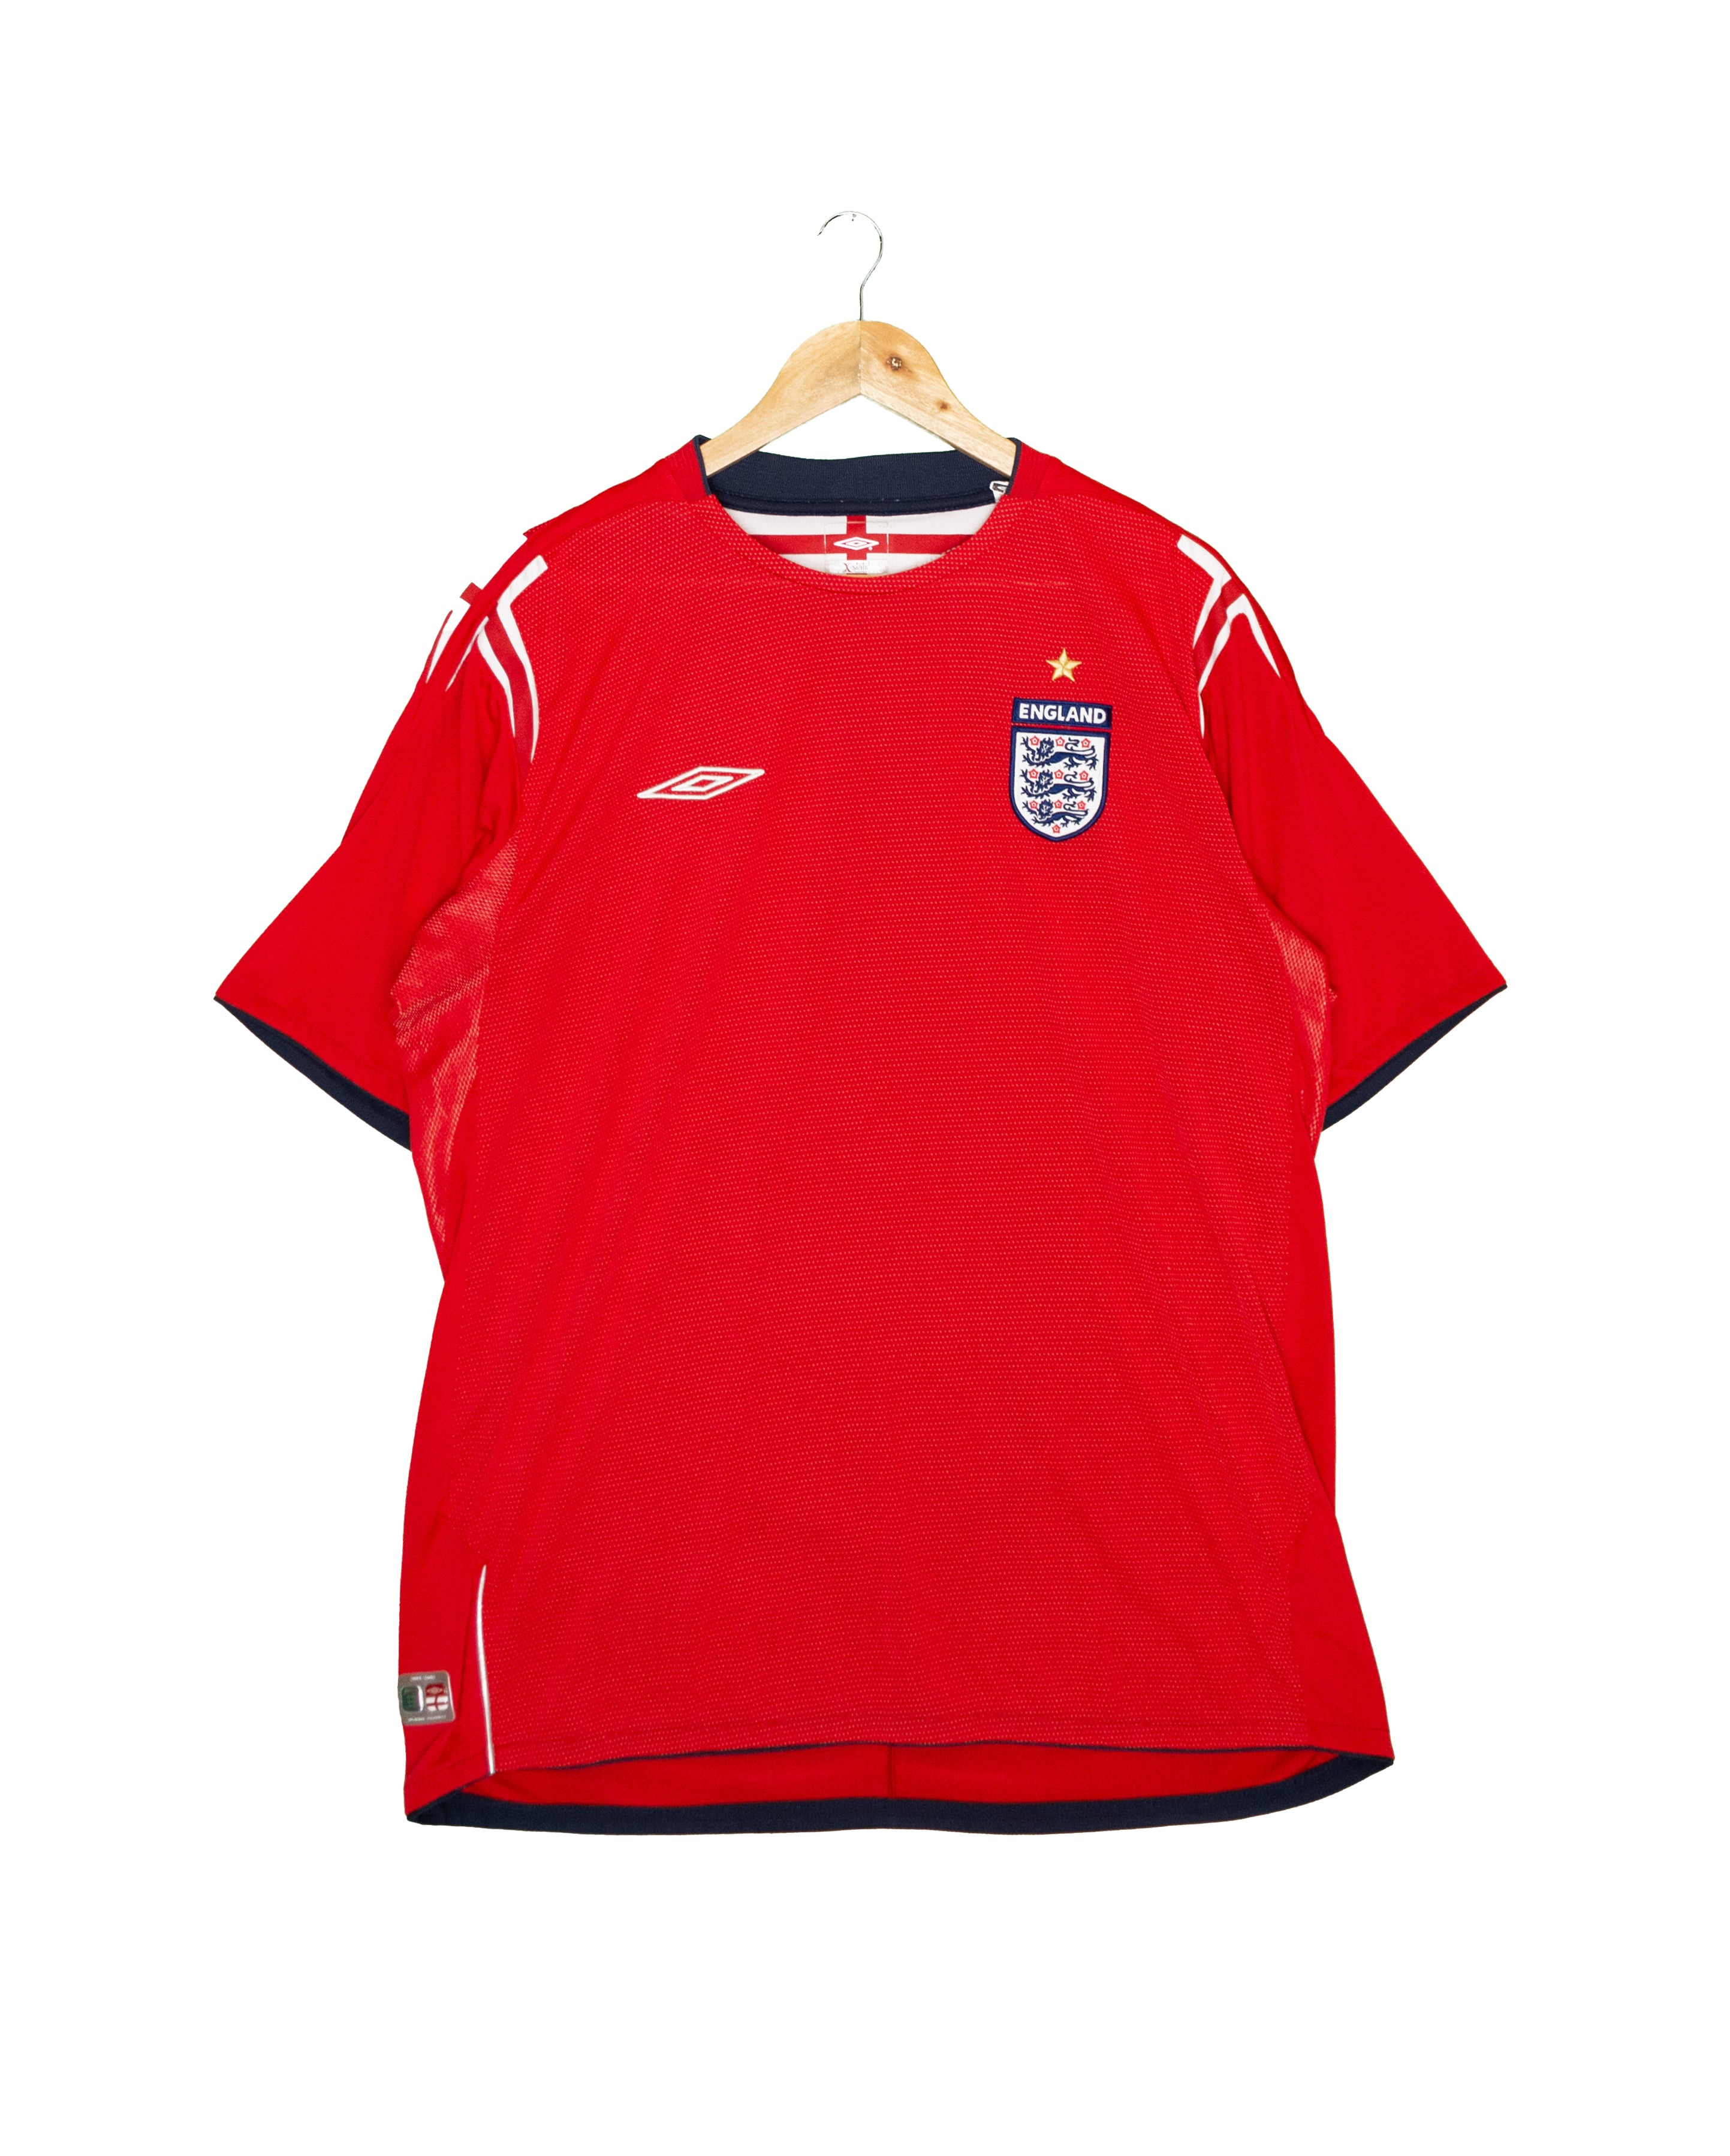 England 2004 Away Shirt - XL - #1900